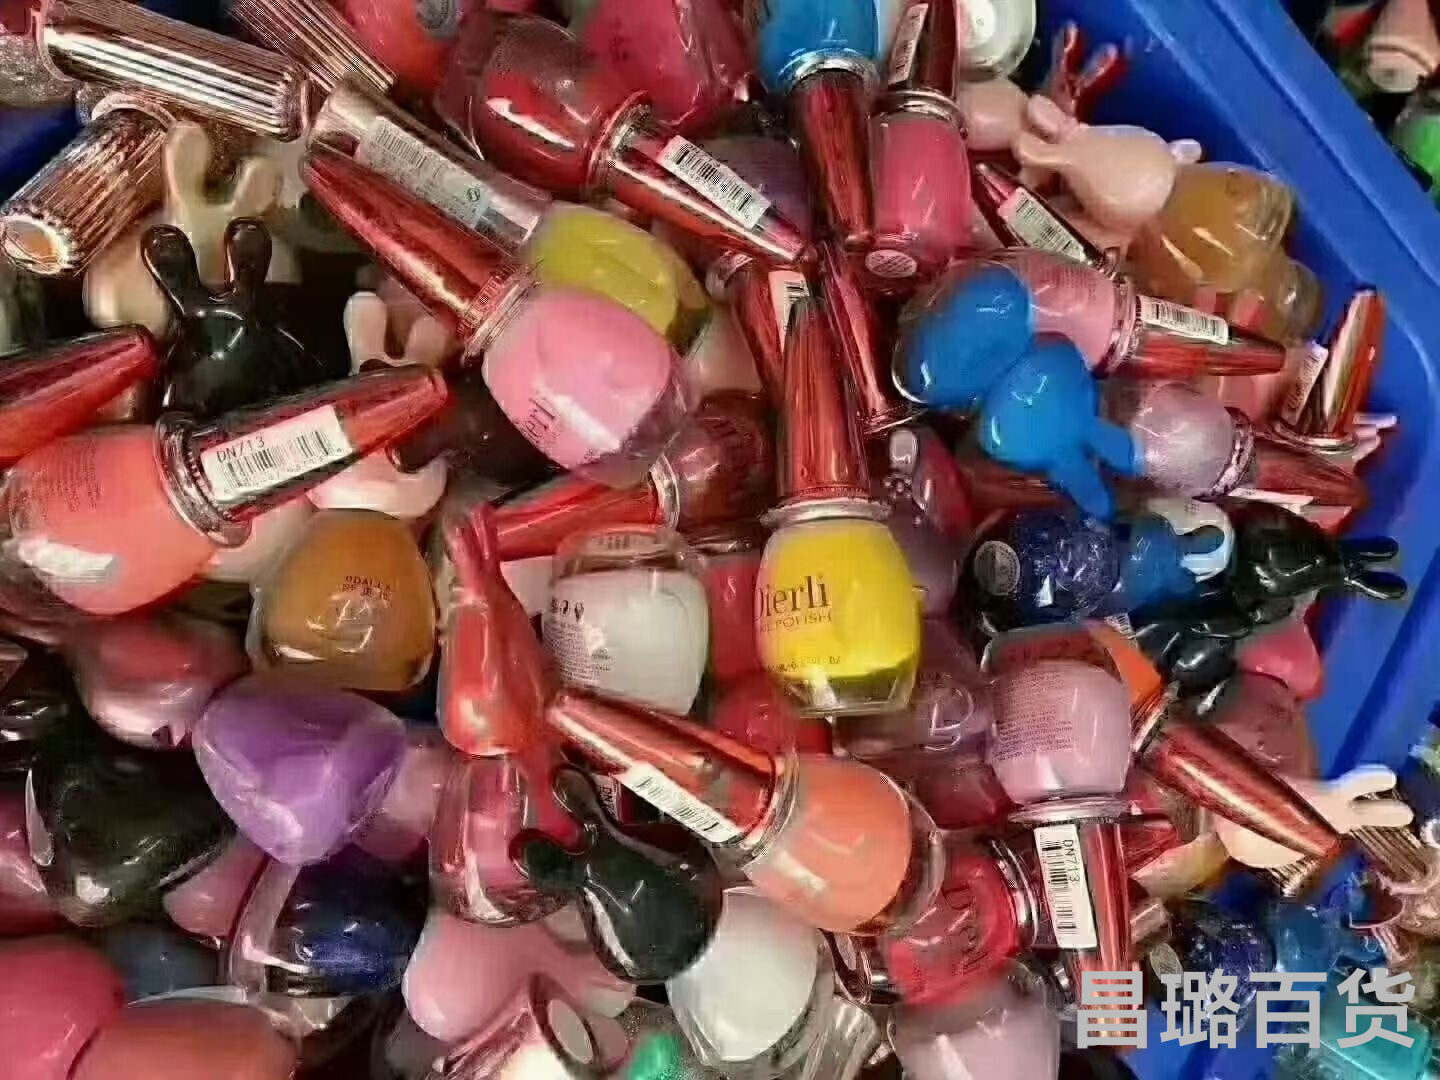 Sold by half kilogram nail polish wholesale, 5 yuan per jin, 8-15 pieces per jin, no expired nail polish